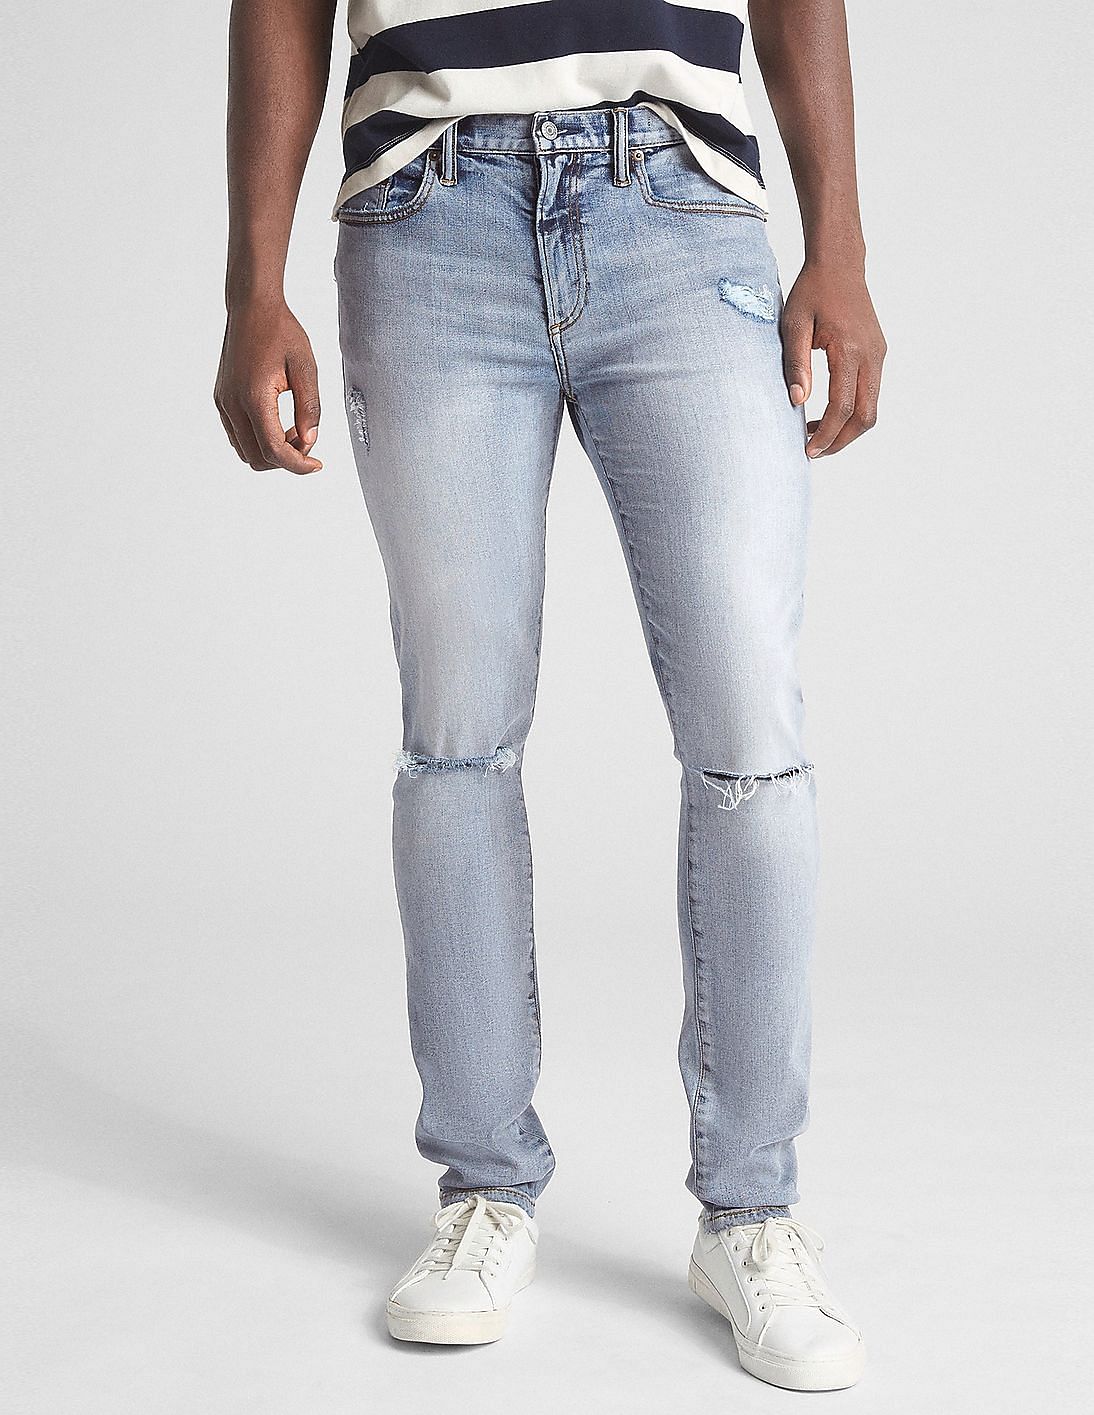 gap skinny jeans mens